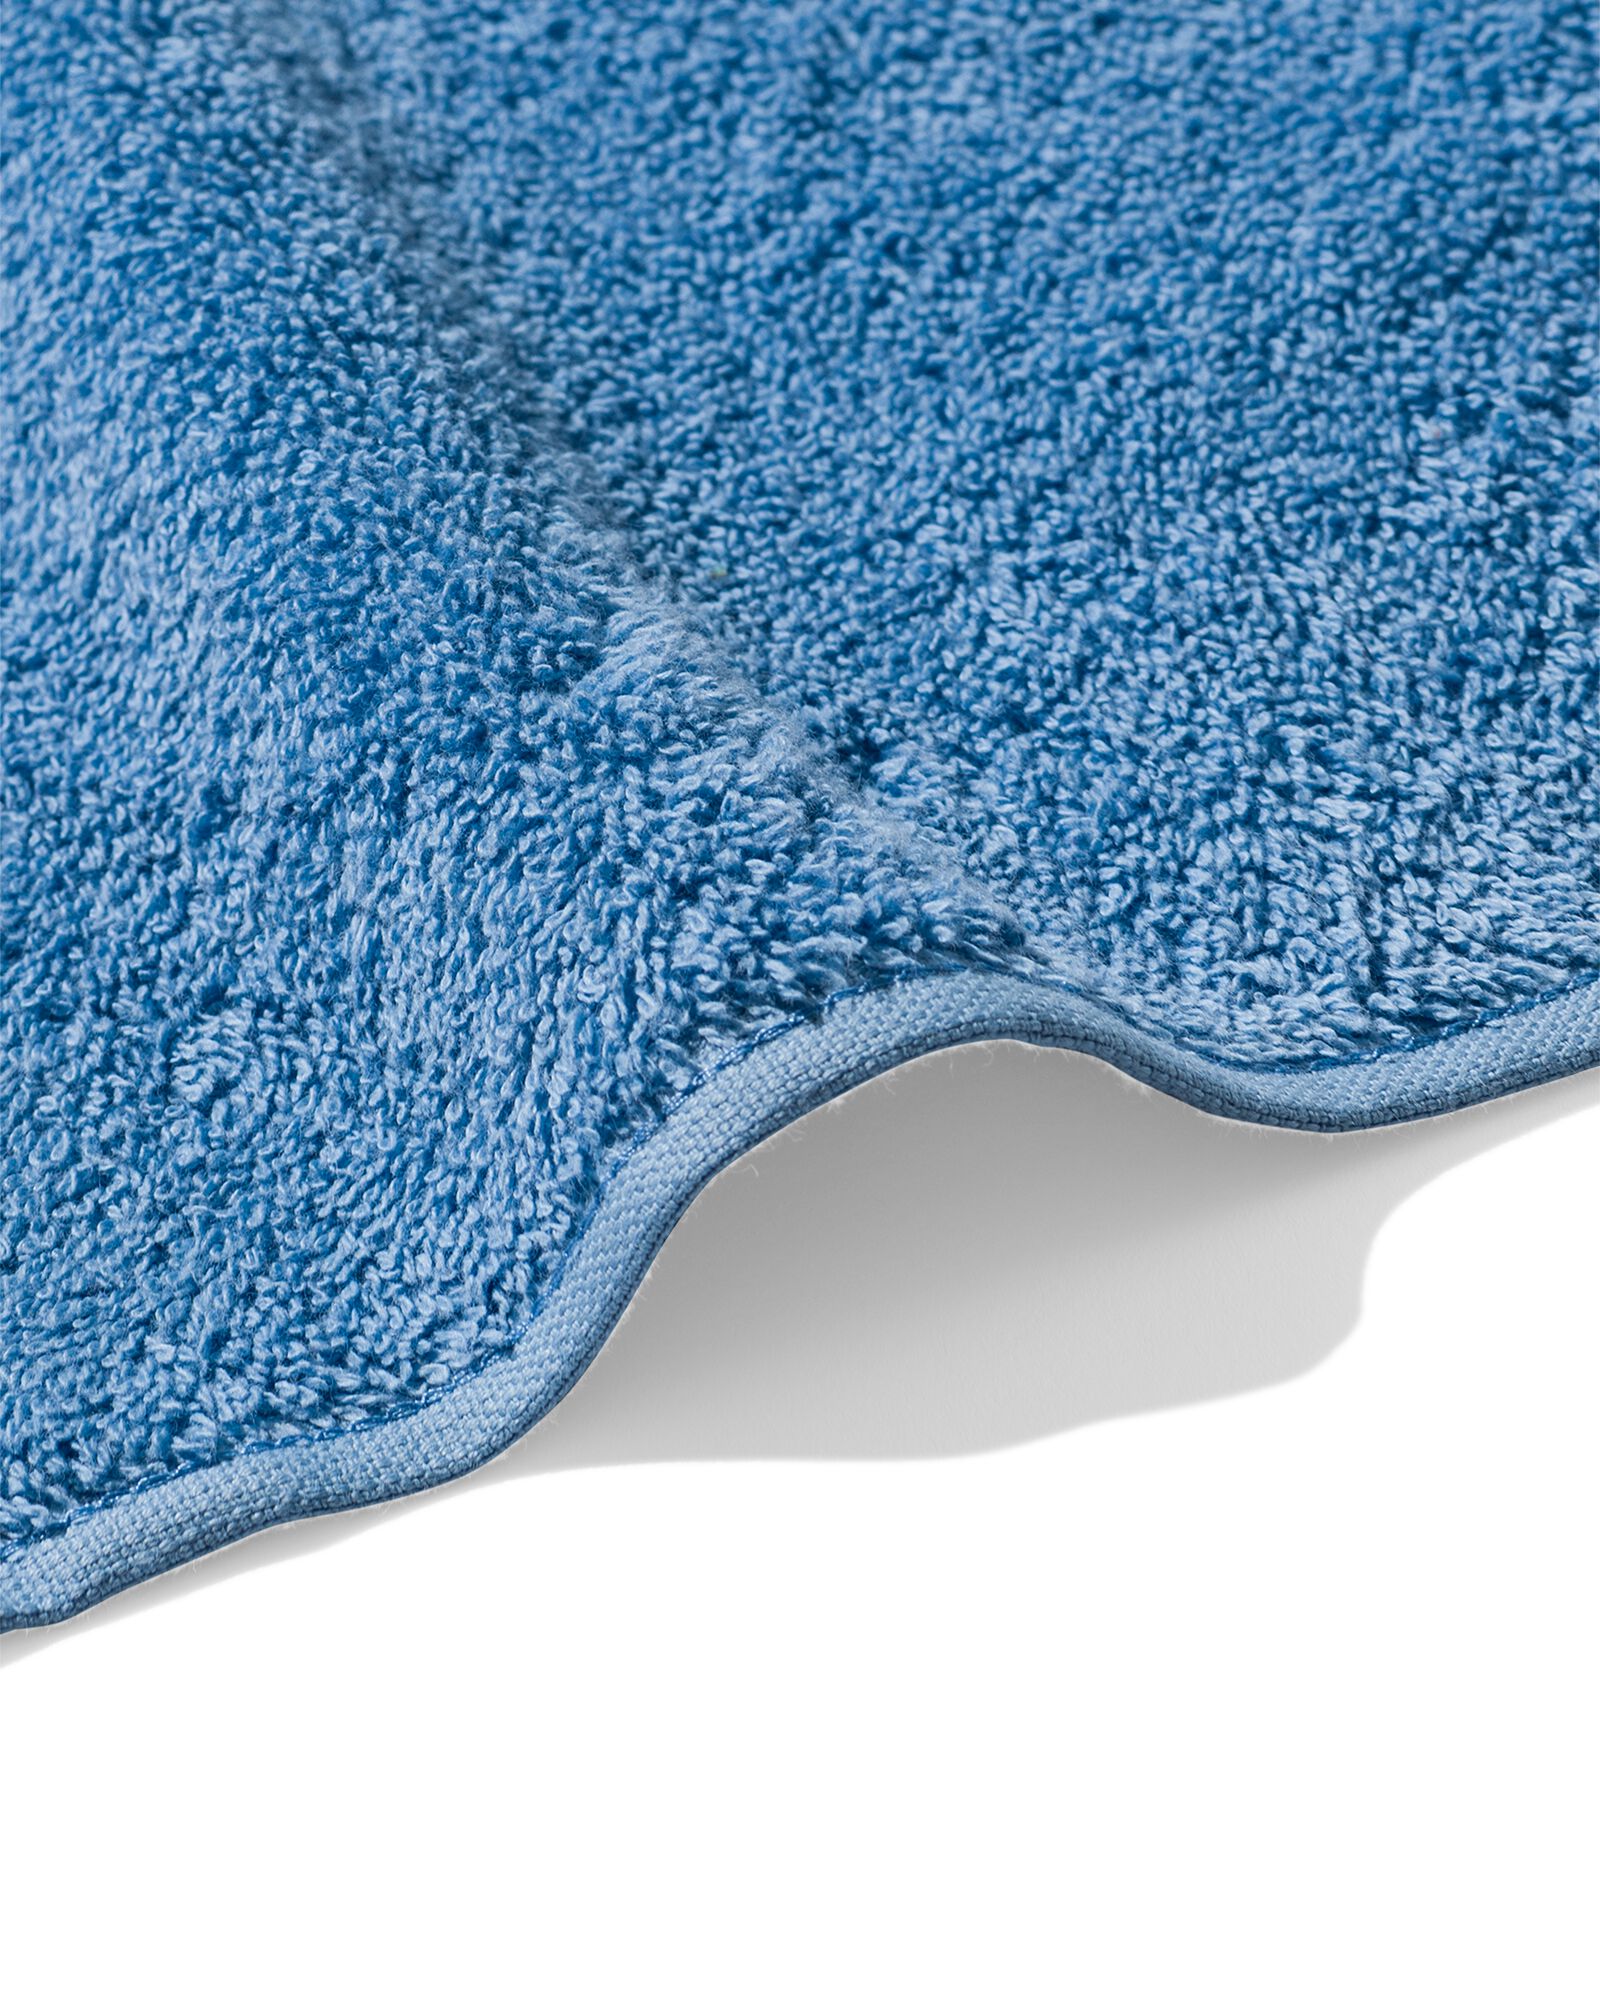 handdoek 60x110 zware kwaliteit - middenblauw - 5200713 - HEMA